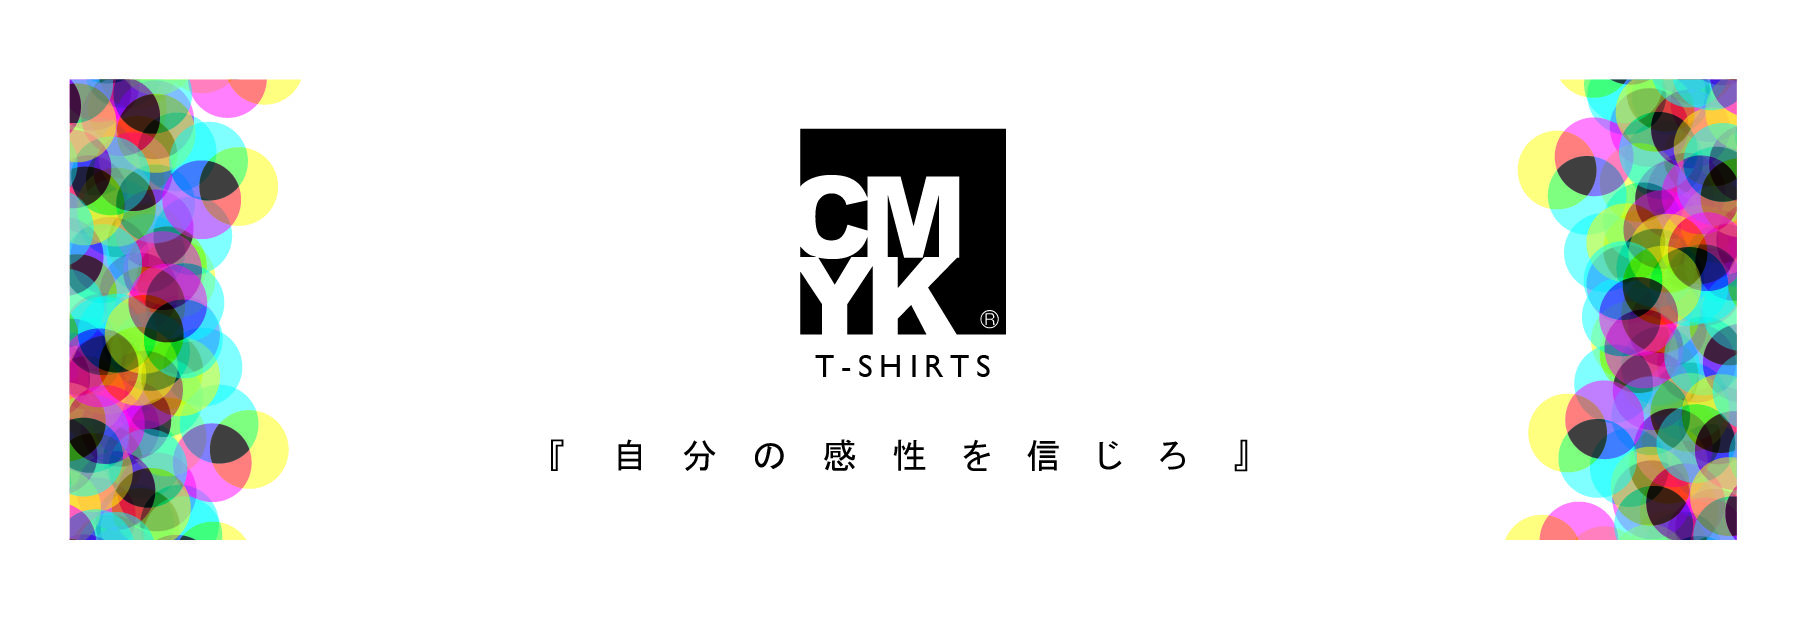 CMYKブランド Tシャツ